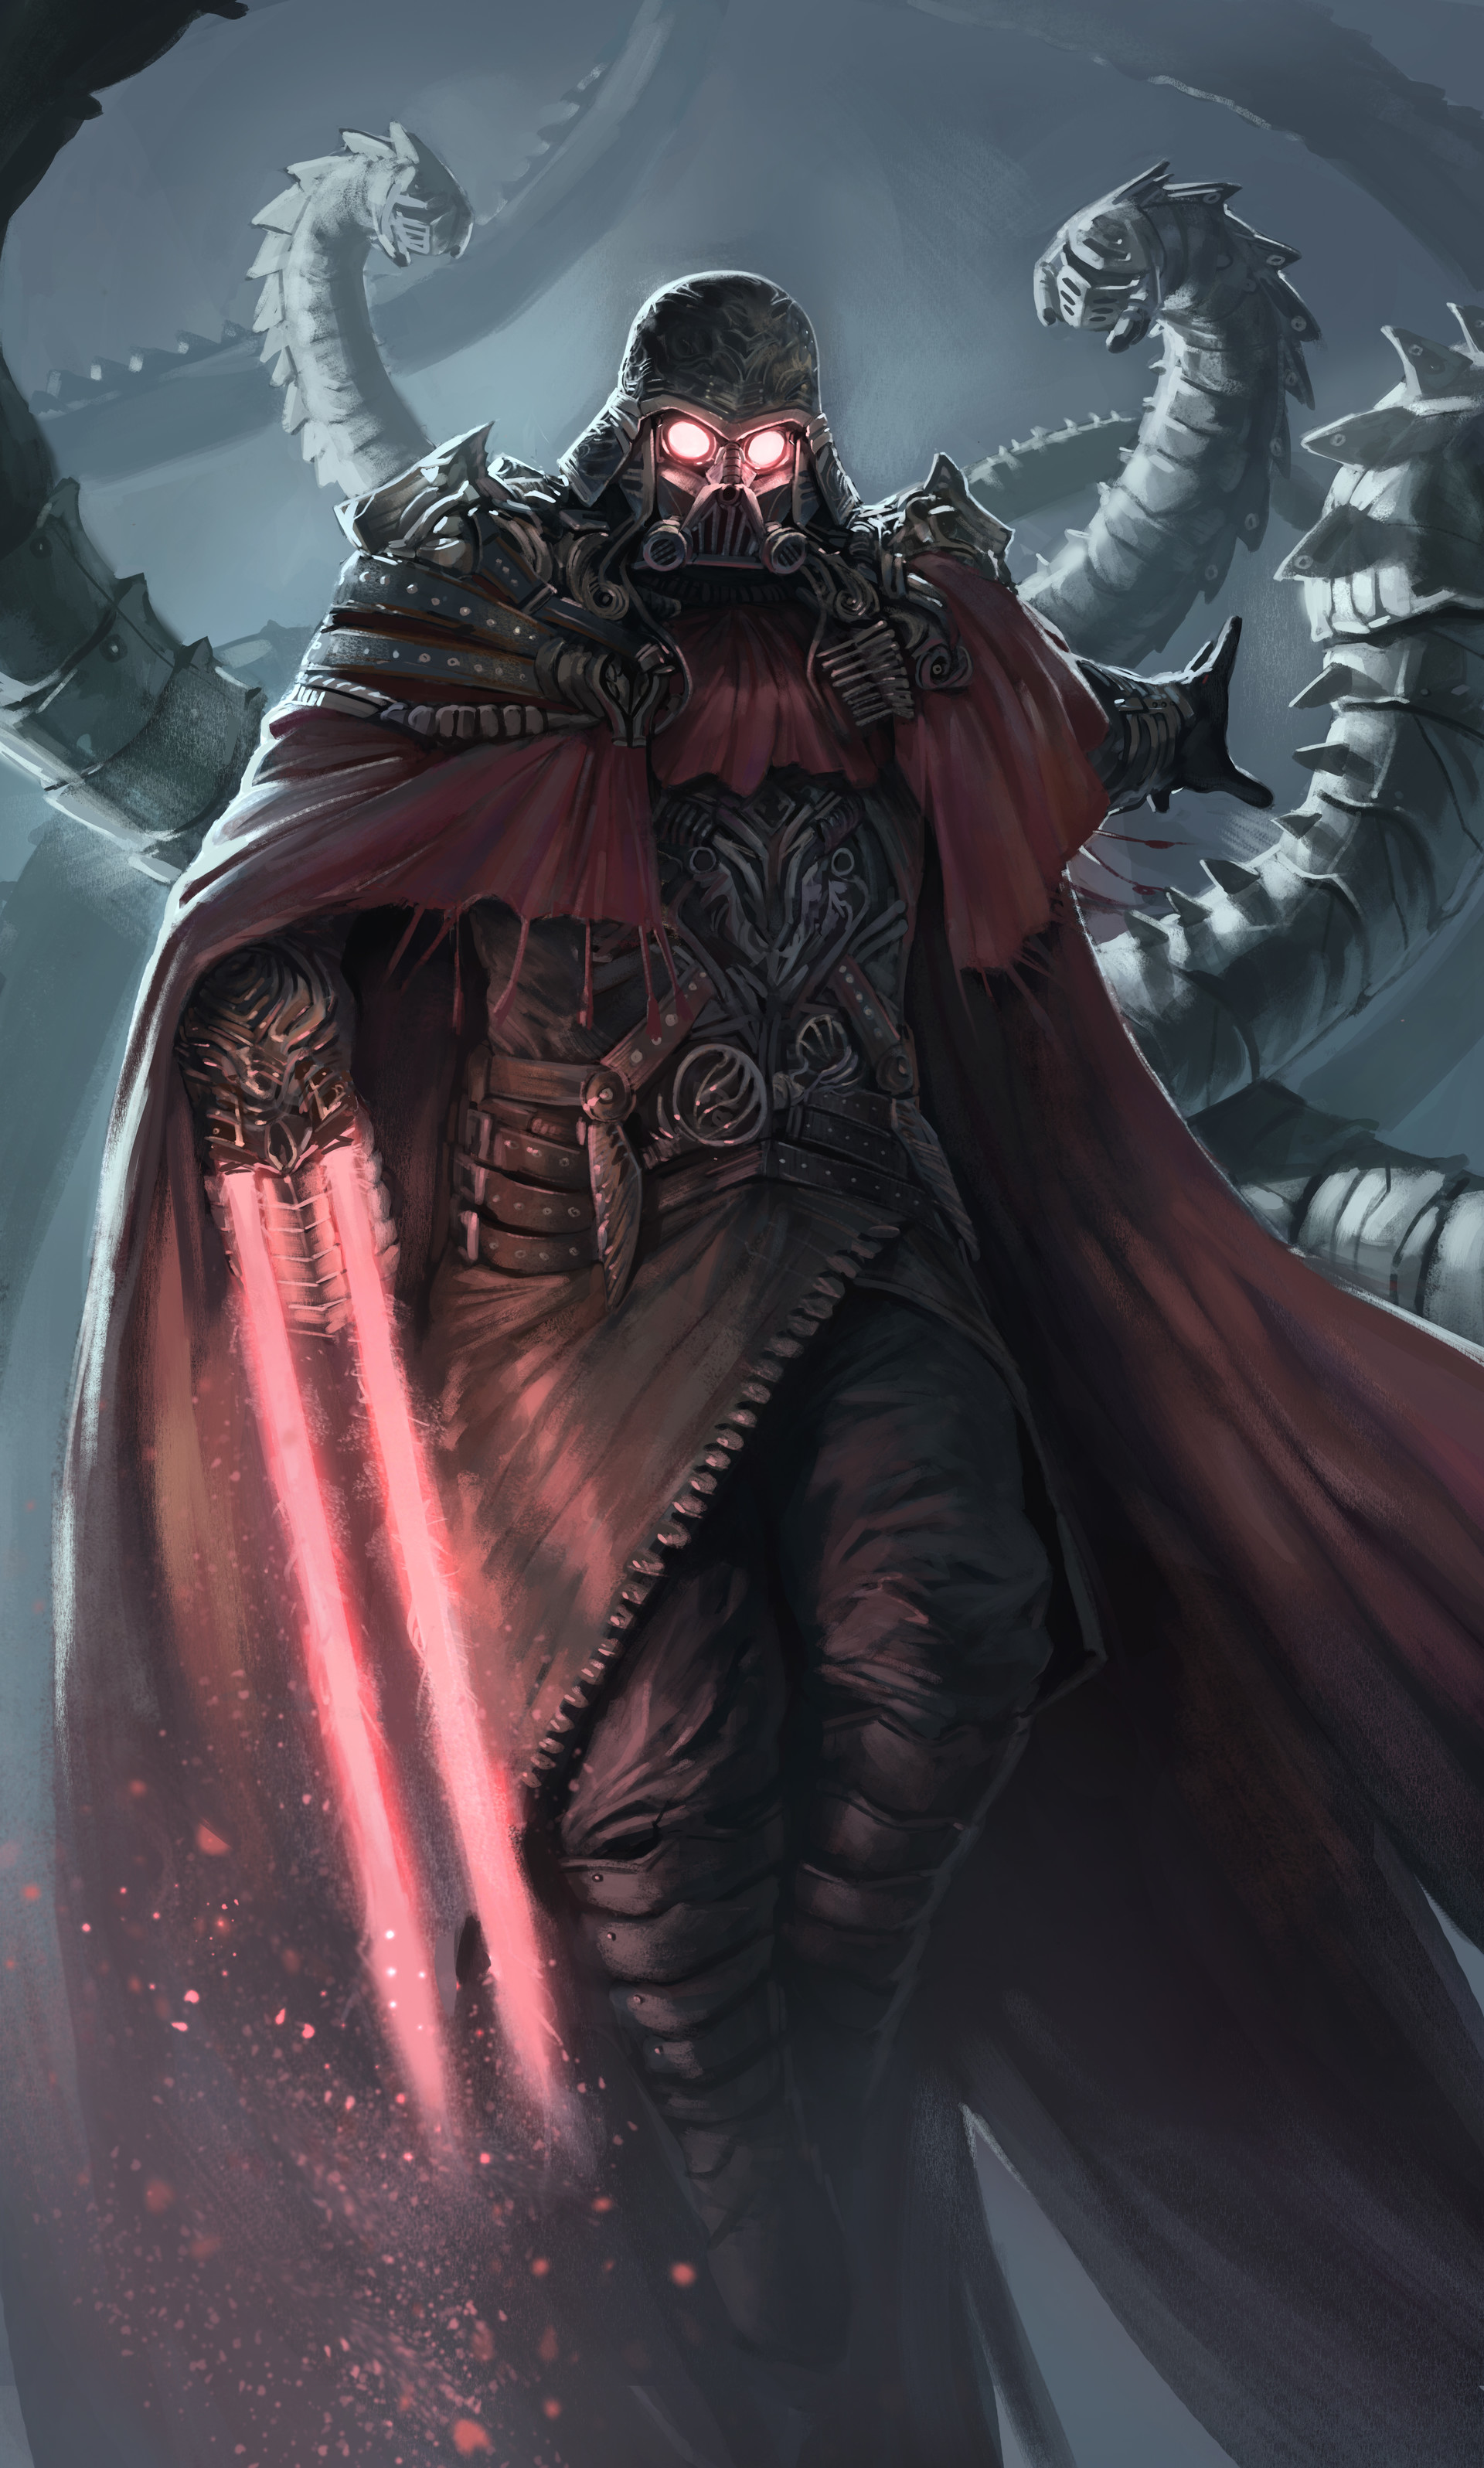 ArtStation - Steampunk Vader, Hazem Ameen